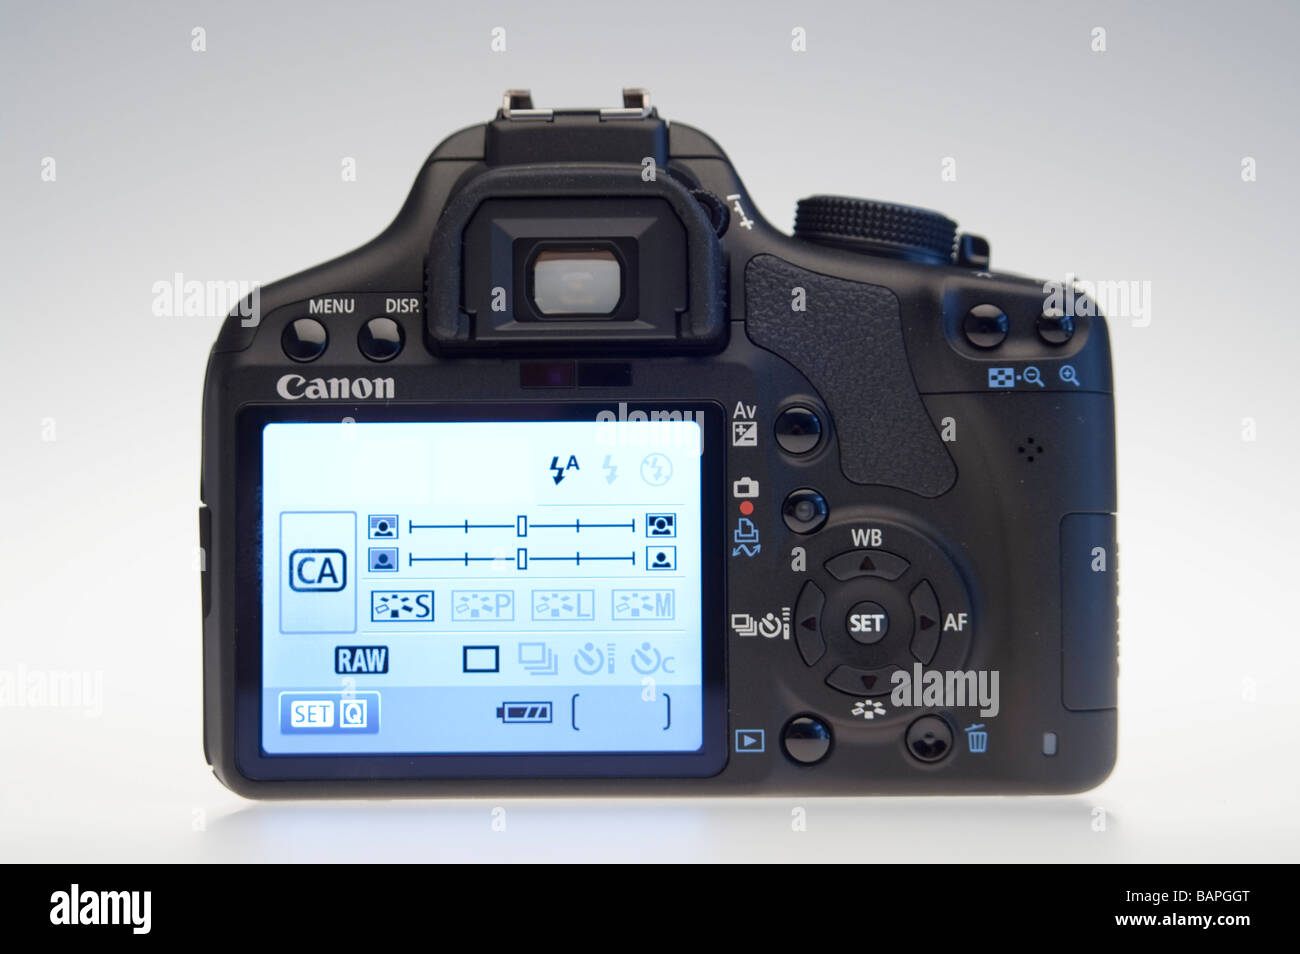 Appareil photo reflex numérique Canon EOS 500D HD vidéo - Écran LCD arrière  avec interface utilisateur graphique Photo Stock - Alamy